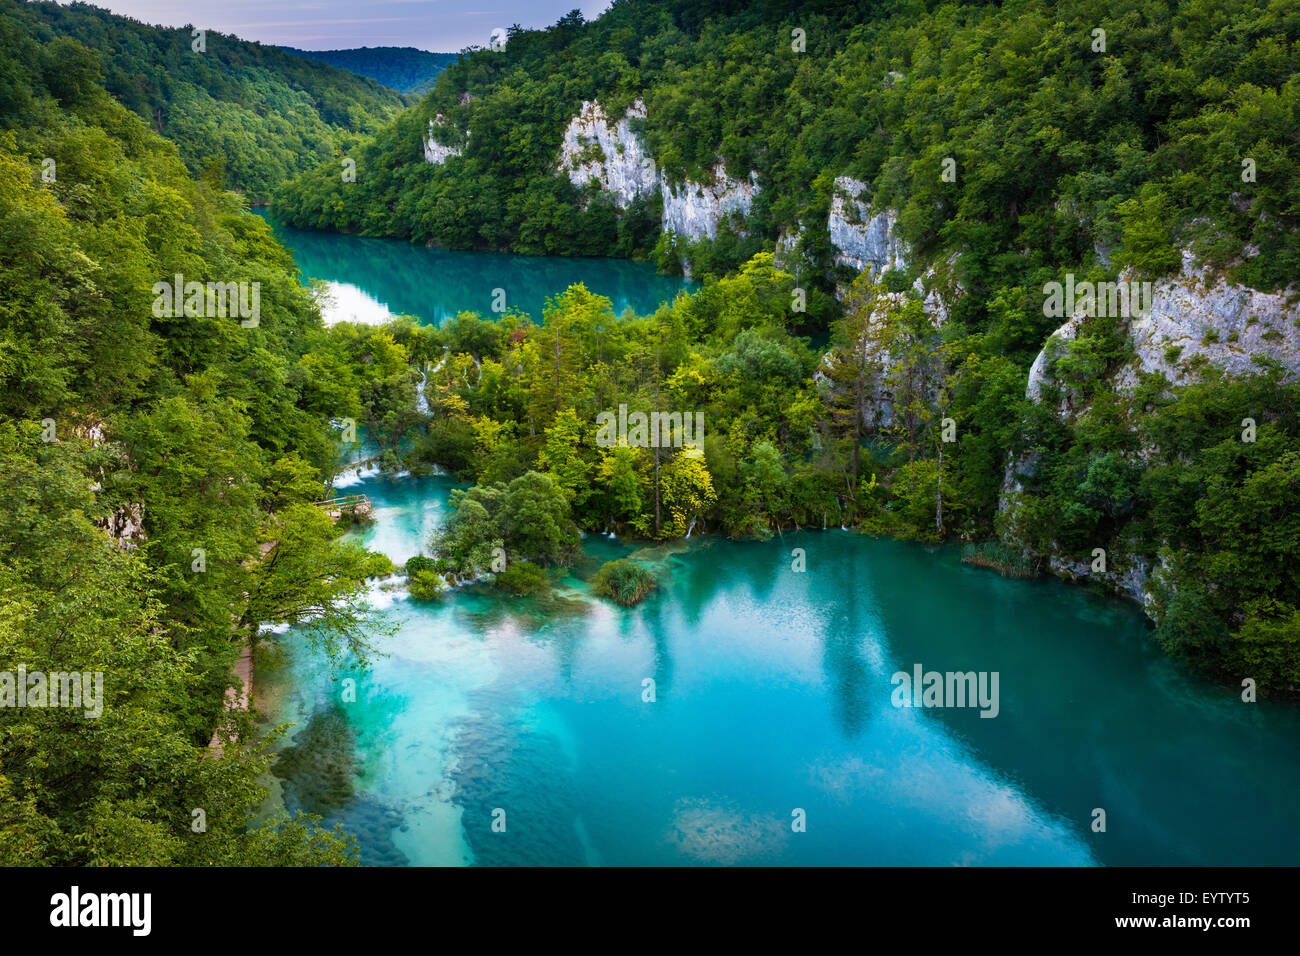 Le parc national des Lacs de Plitvice est l'un des plus anciens parcs nationaux du sud-est de l'Europe et le plus grand parc national en Croatie. Banque D'Images